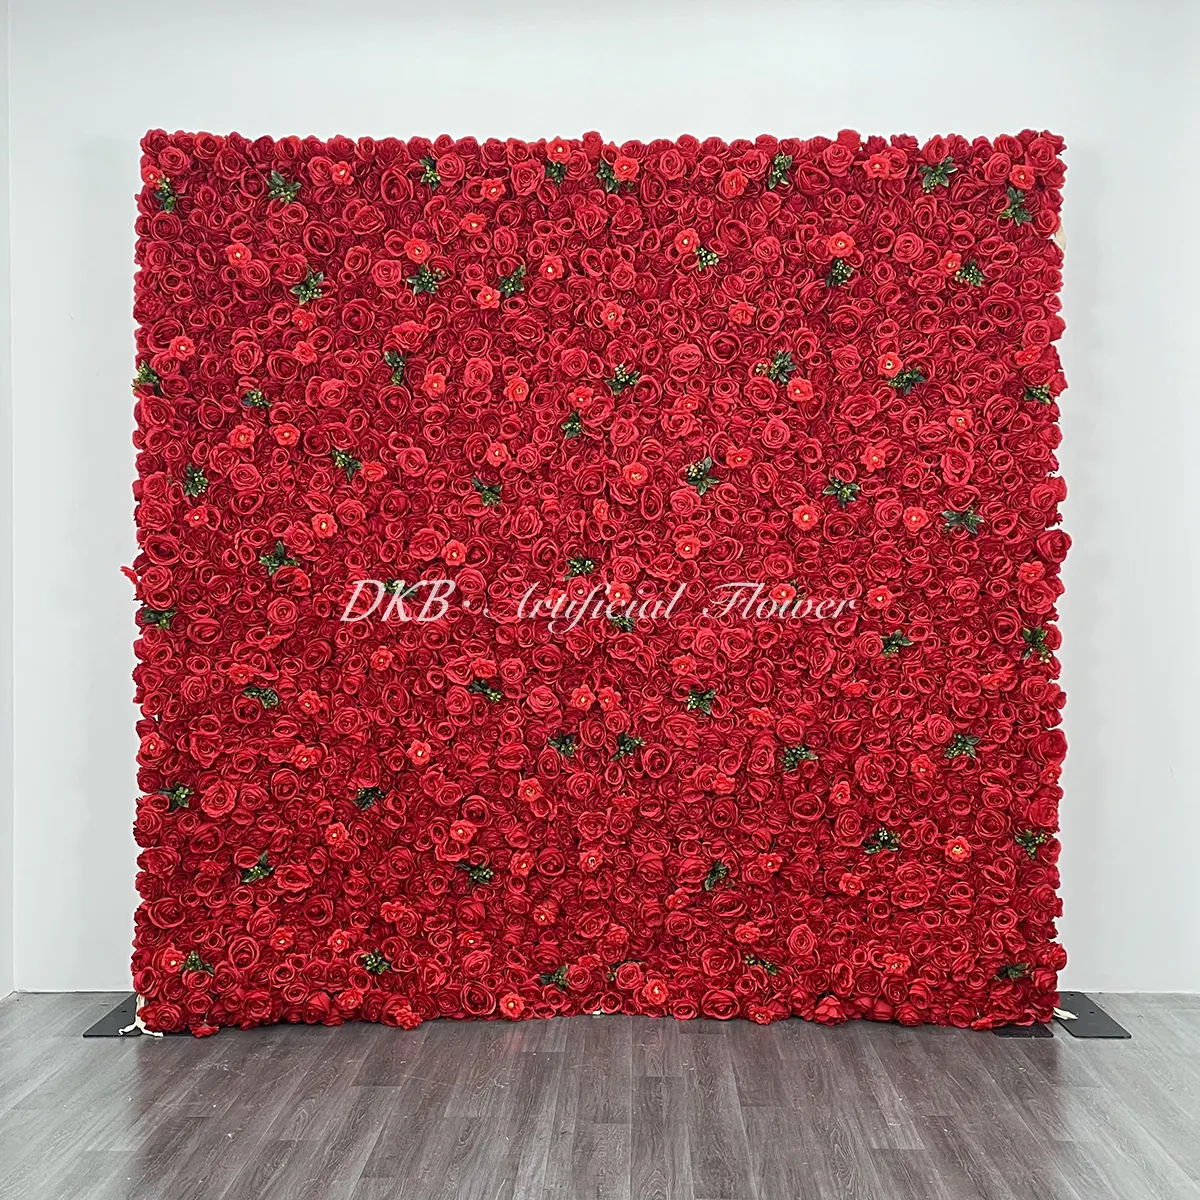 DKBホットセール赤い花の壁の背景の装飾花の壁パネル人工パネルデカール背景画像の装飾